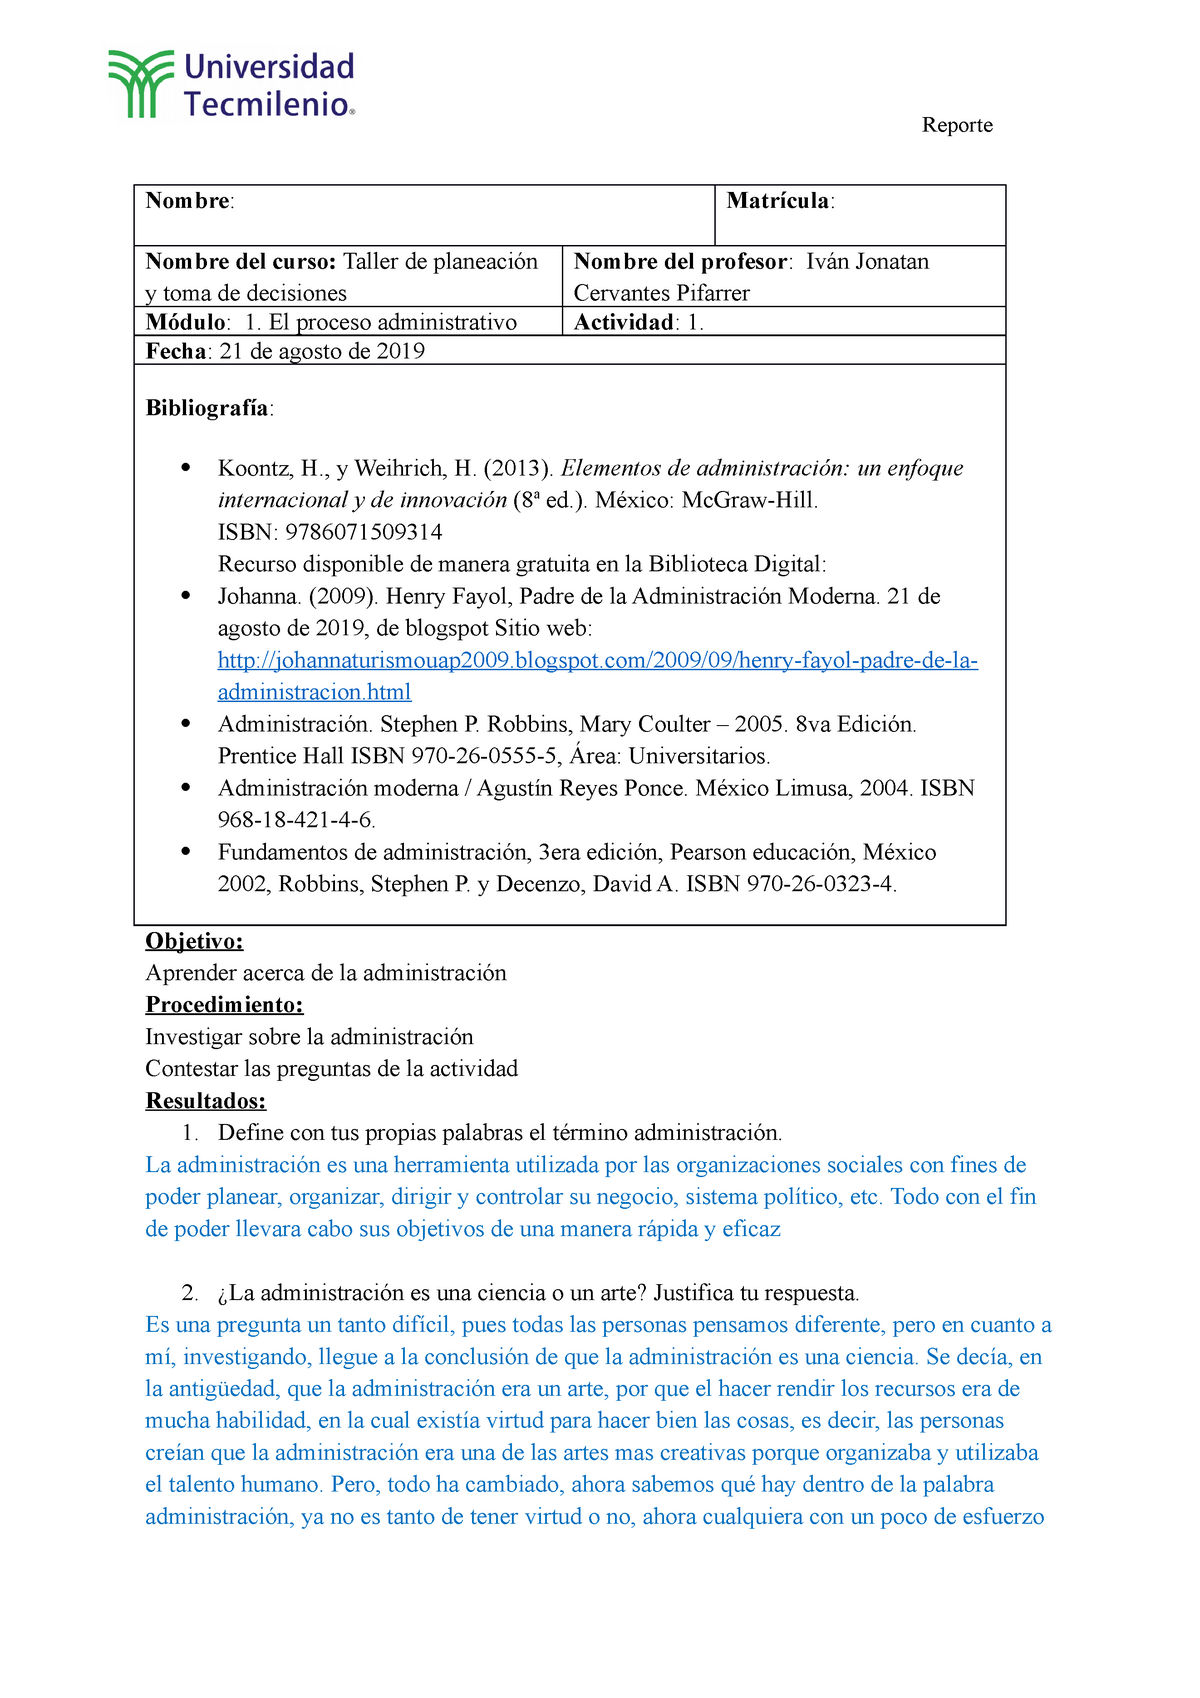 Deciciones AC1 - DSM - Objetivo: Aprender acerca de la administración  Procedimiento: Investigar - Studocu